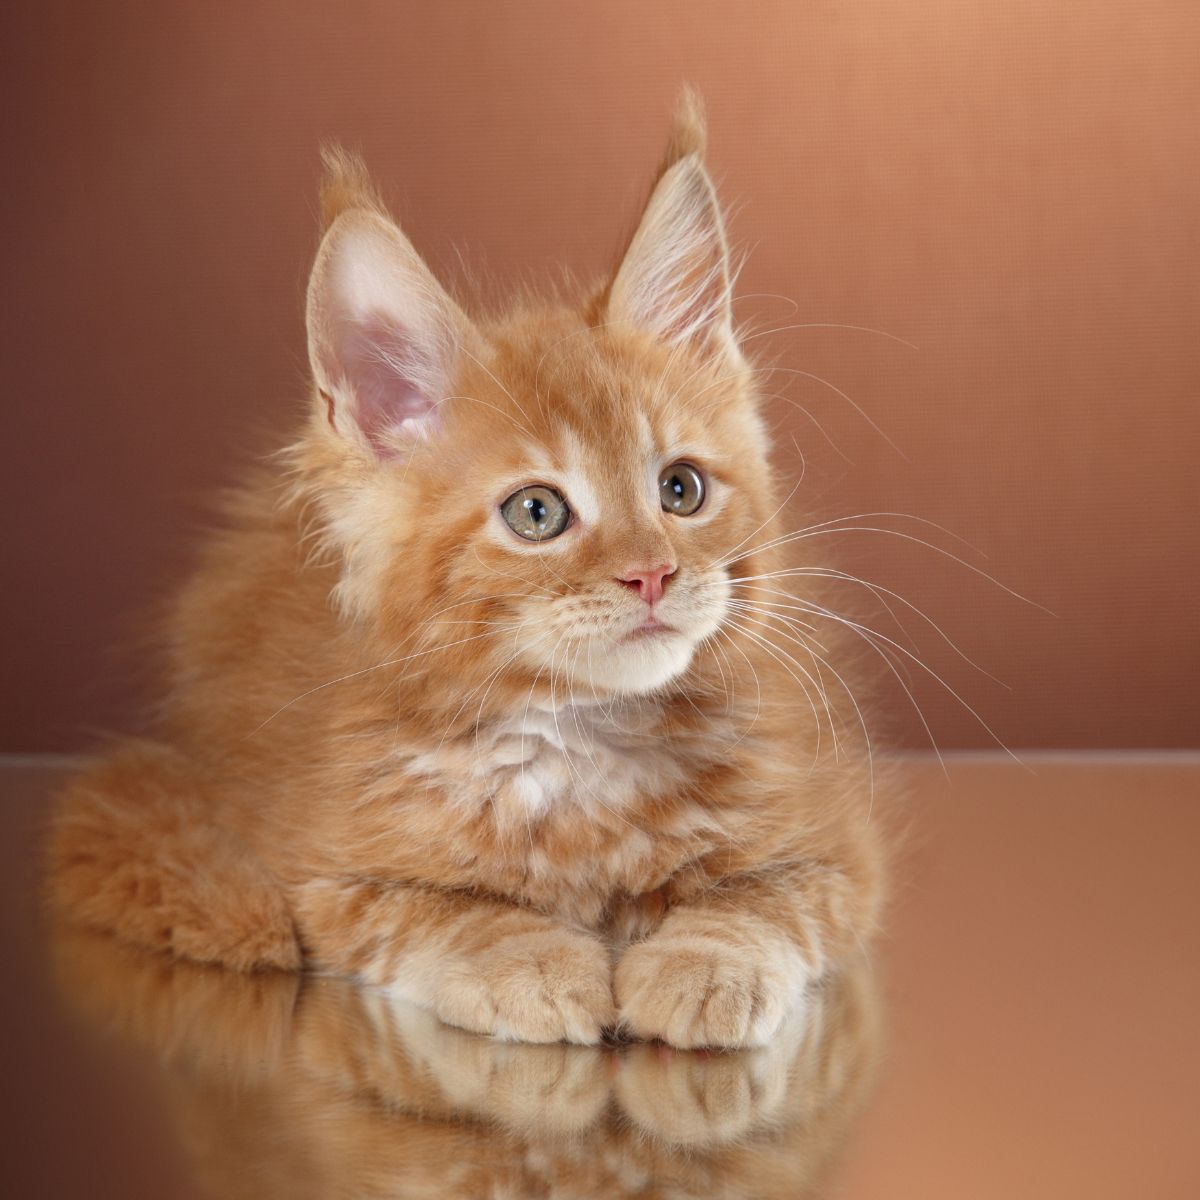 photo of orange kitten